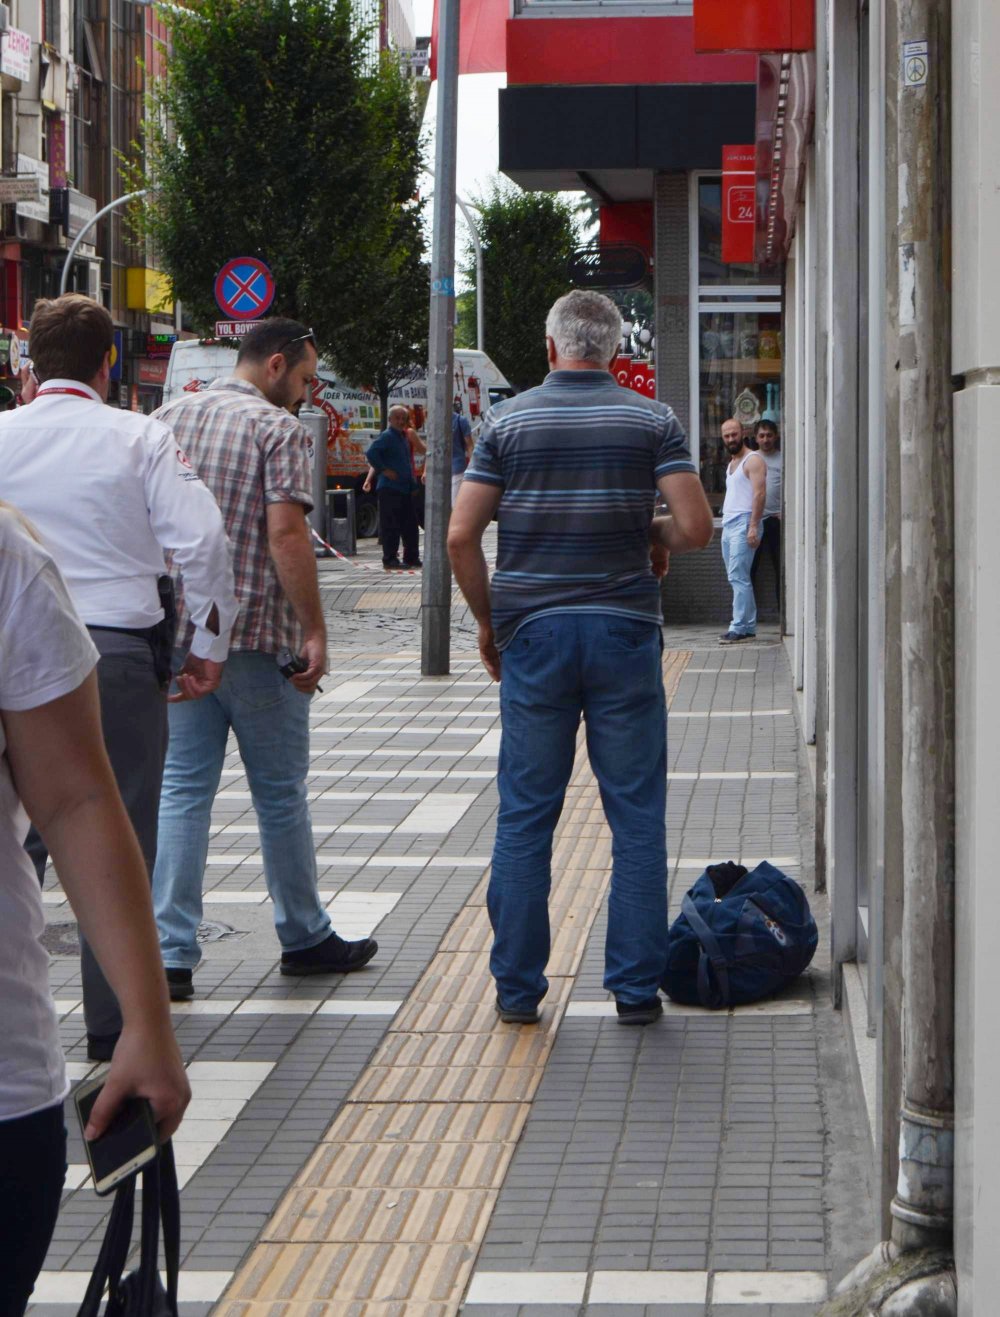 Trabzon'da şüpheli çanta paniği